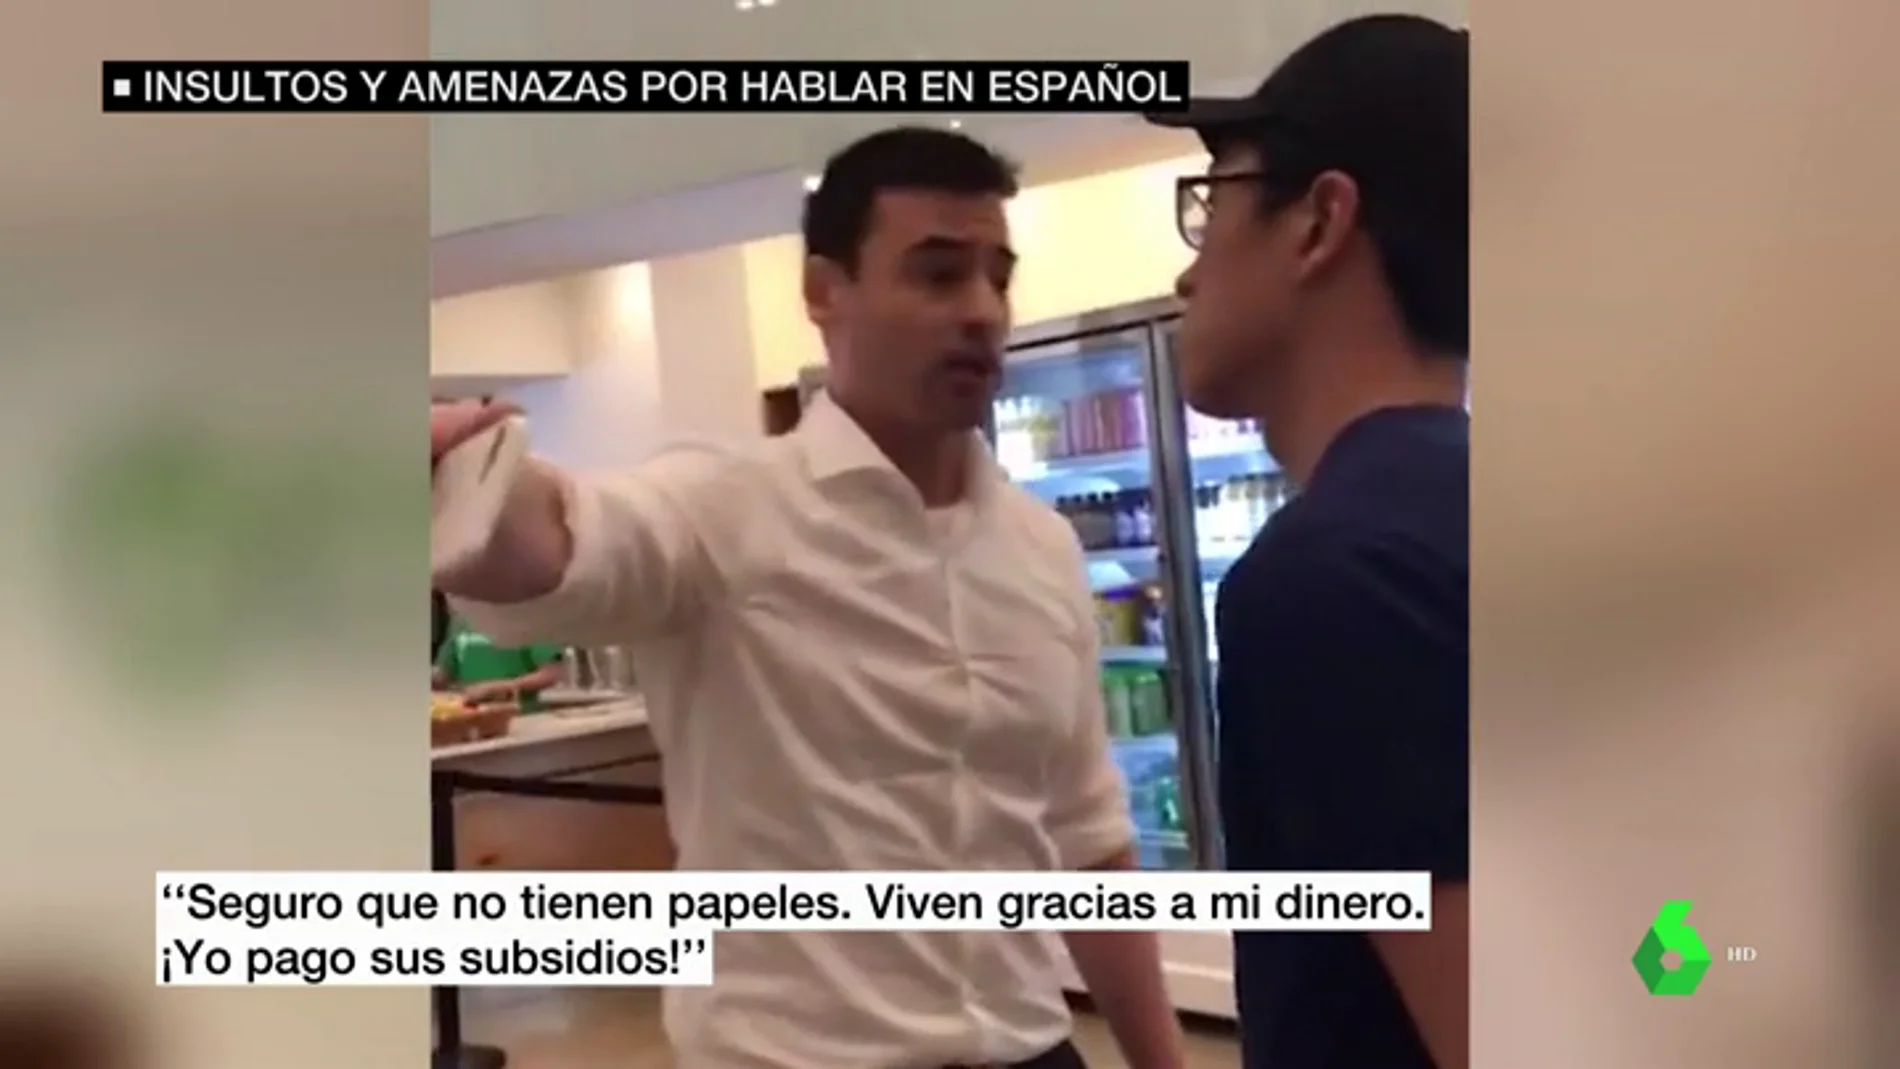 Un conocido abogado estadounidense increpa, insulta y amenaza a empleados de un restaurante por hablar español